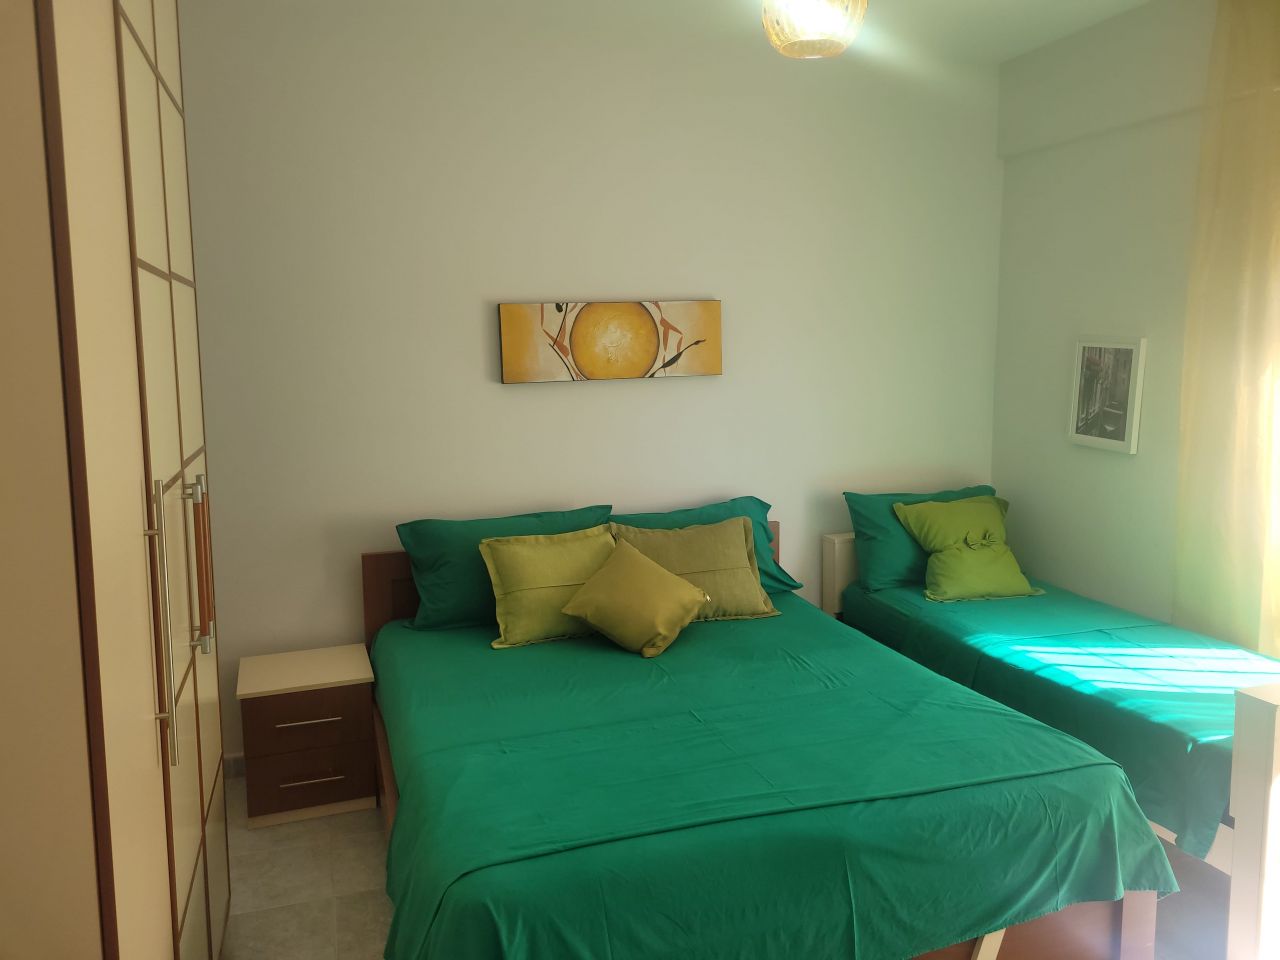 Apartment Mit Einem Schlafzimmer Zum Verkauf In Durres Albanien, In Einer Ruhigen Gegend Gelegen, Mit Großartigem Meerblick